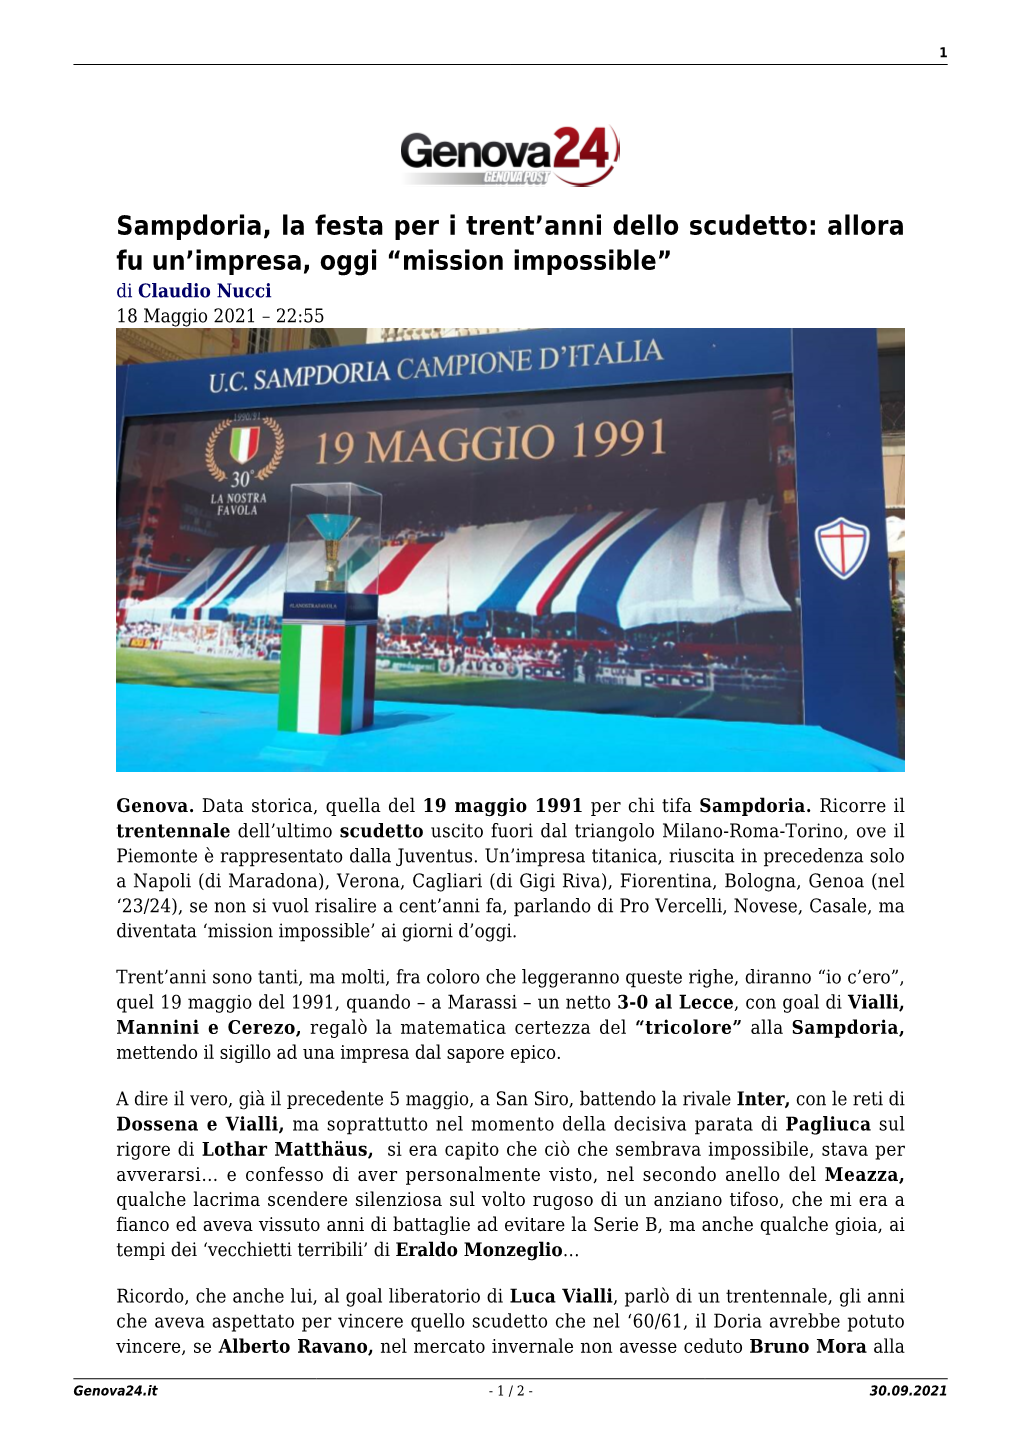 Sampdoria, La Festa Per I Trent'anni Dello Scudetto